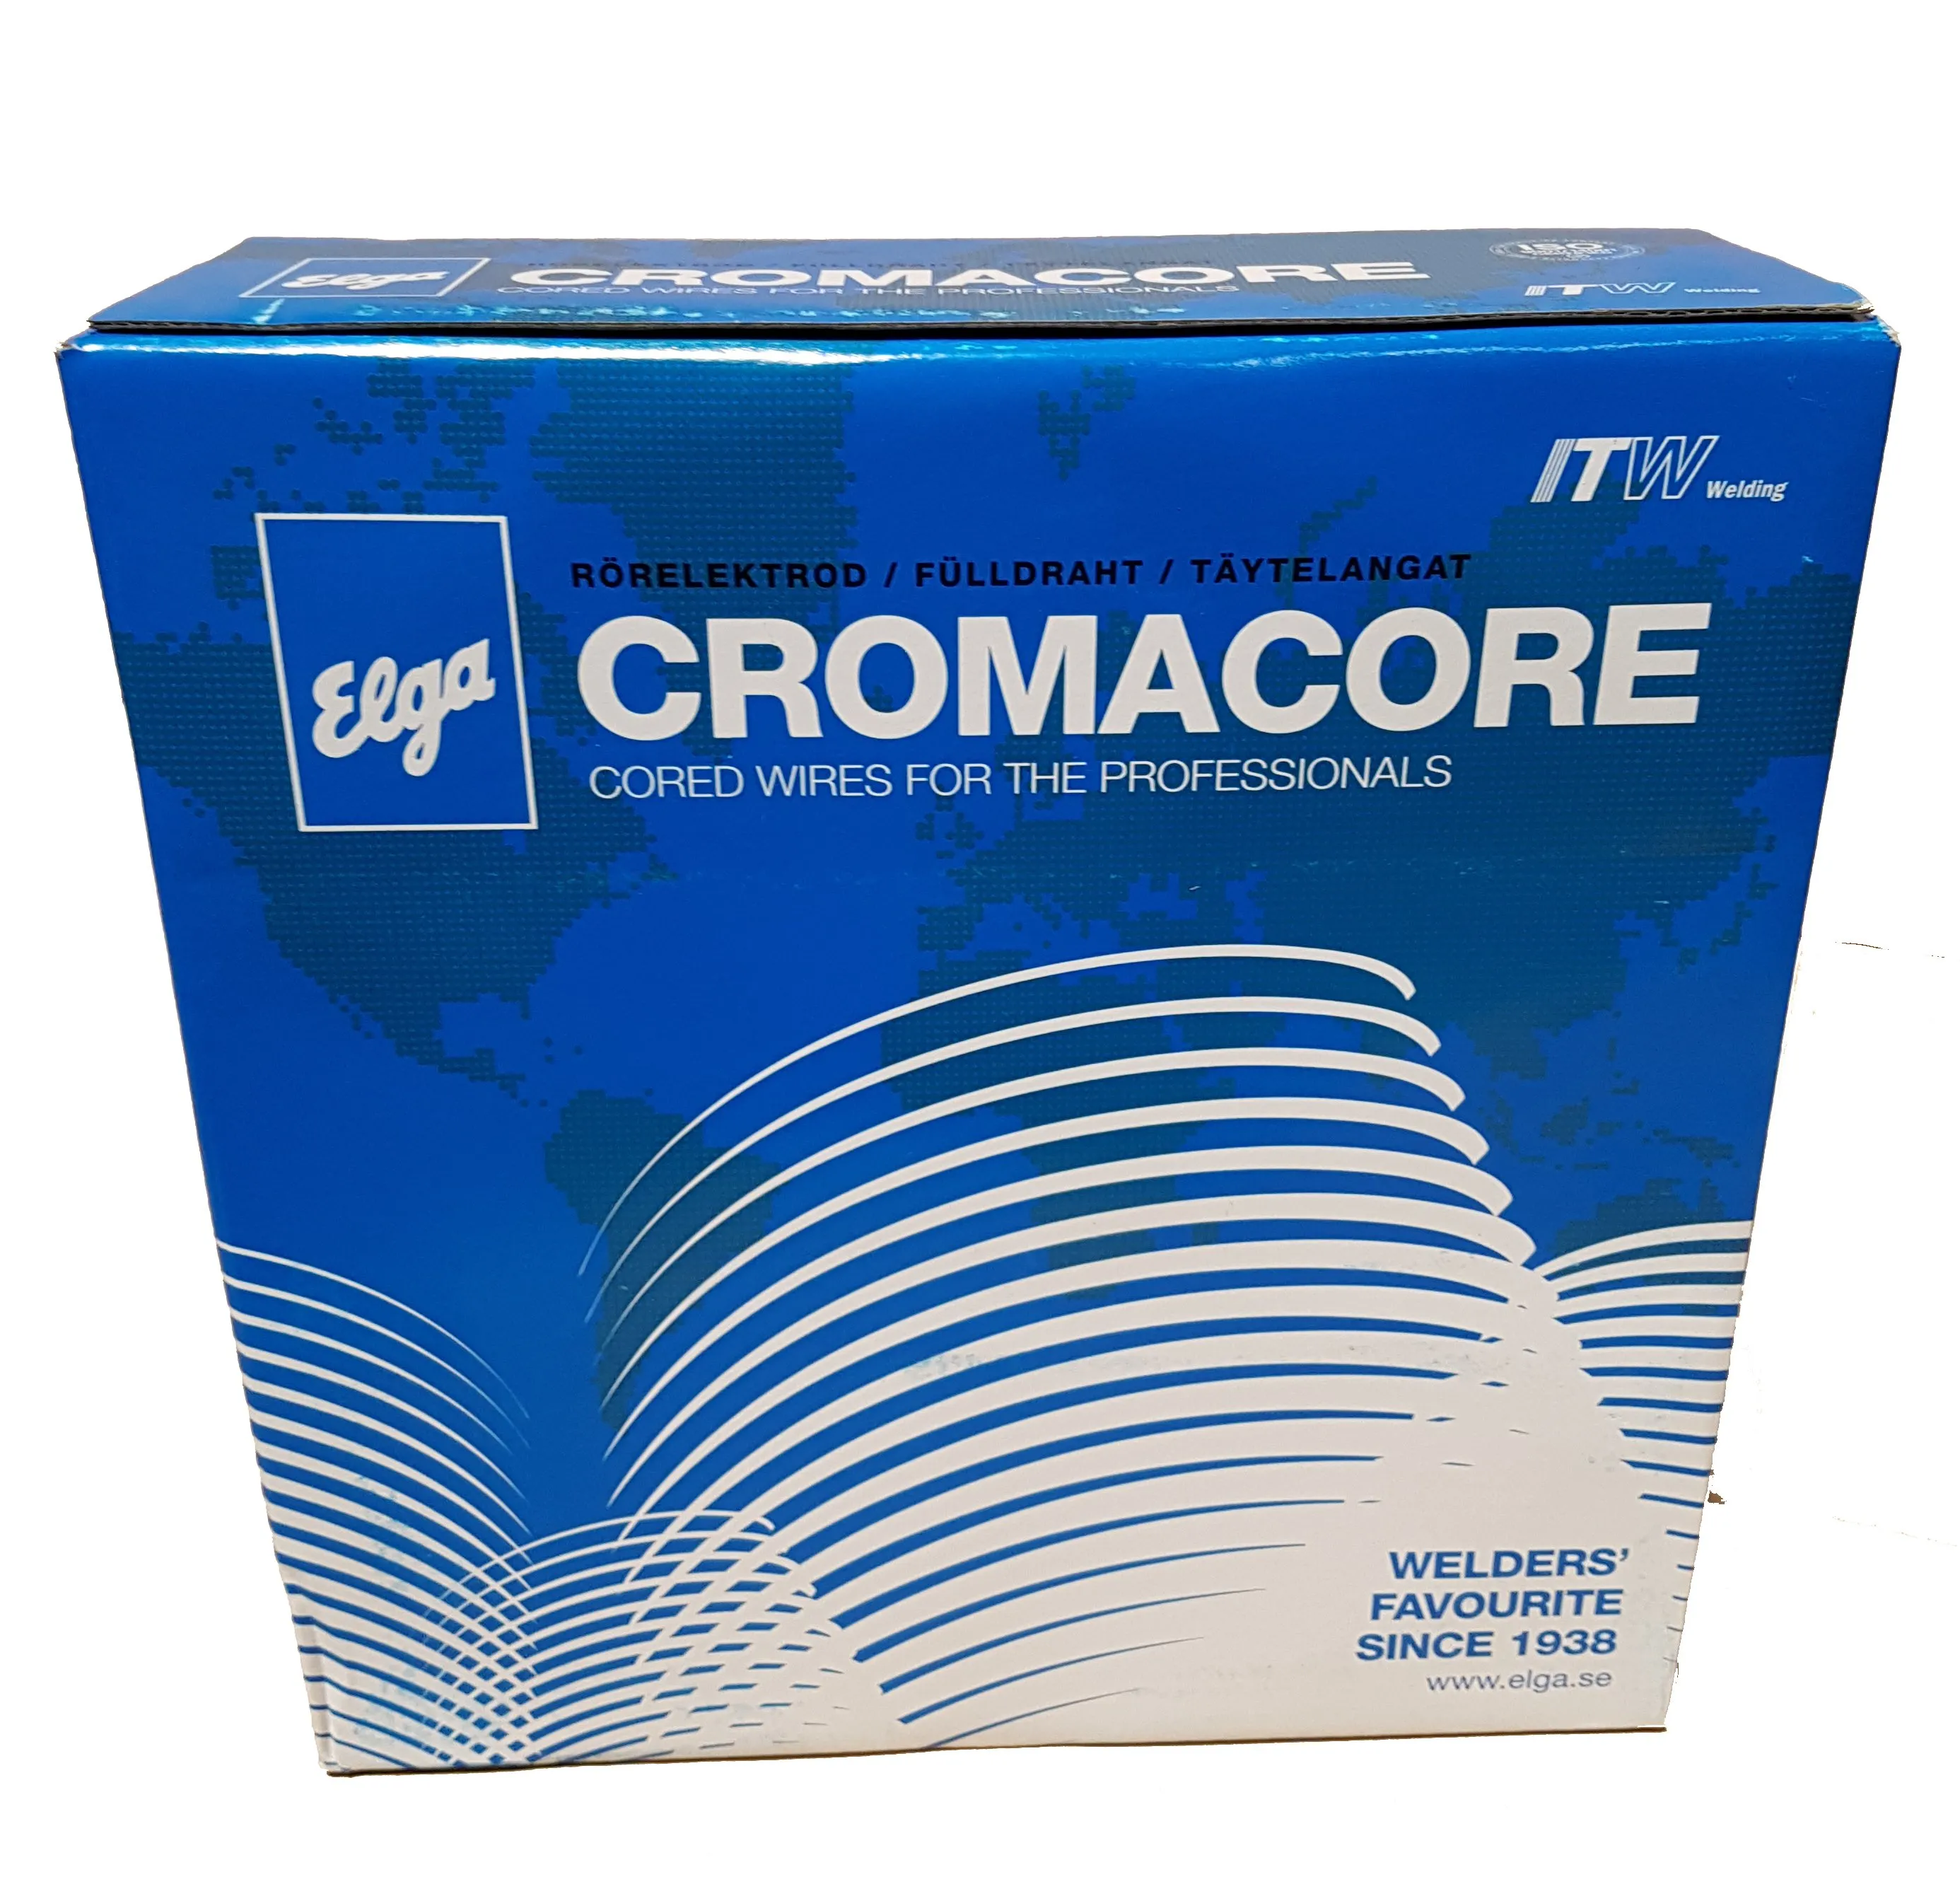 ELGA Cromacore 308LT1 - trubičkový svařovací drát s rutilovou náplní pro nerezové Cr-Ni ocele